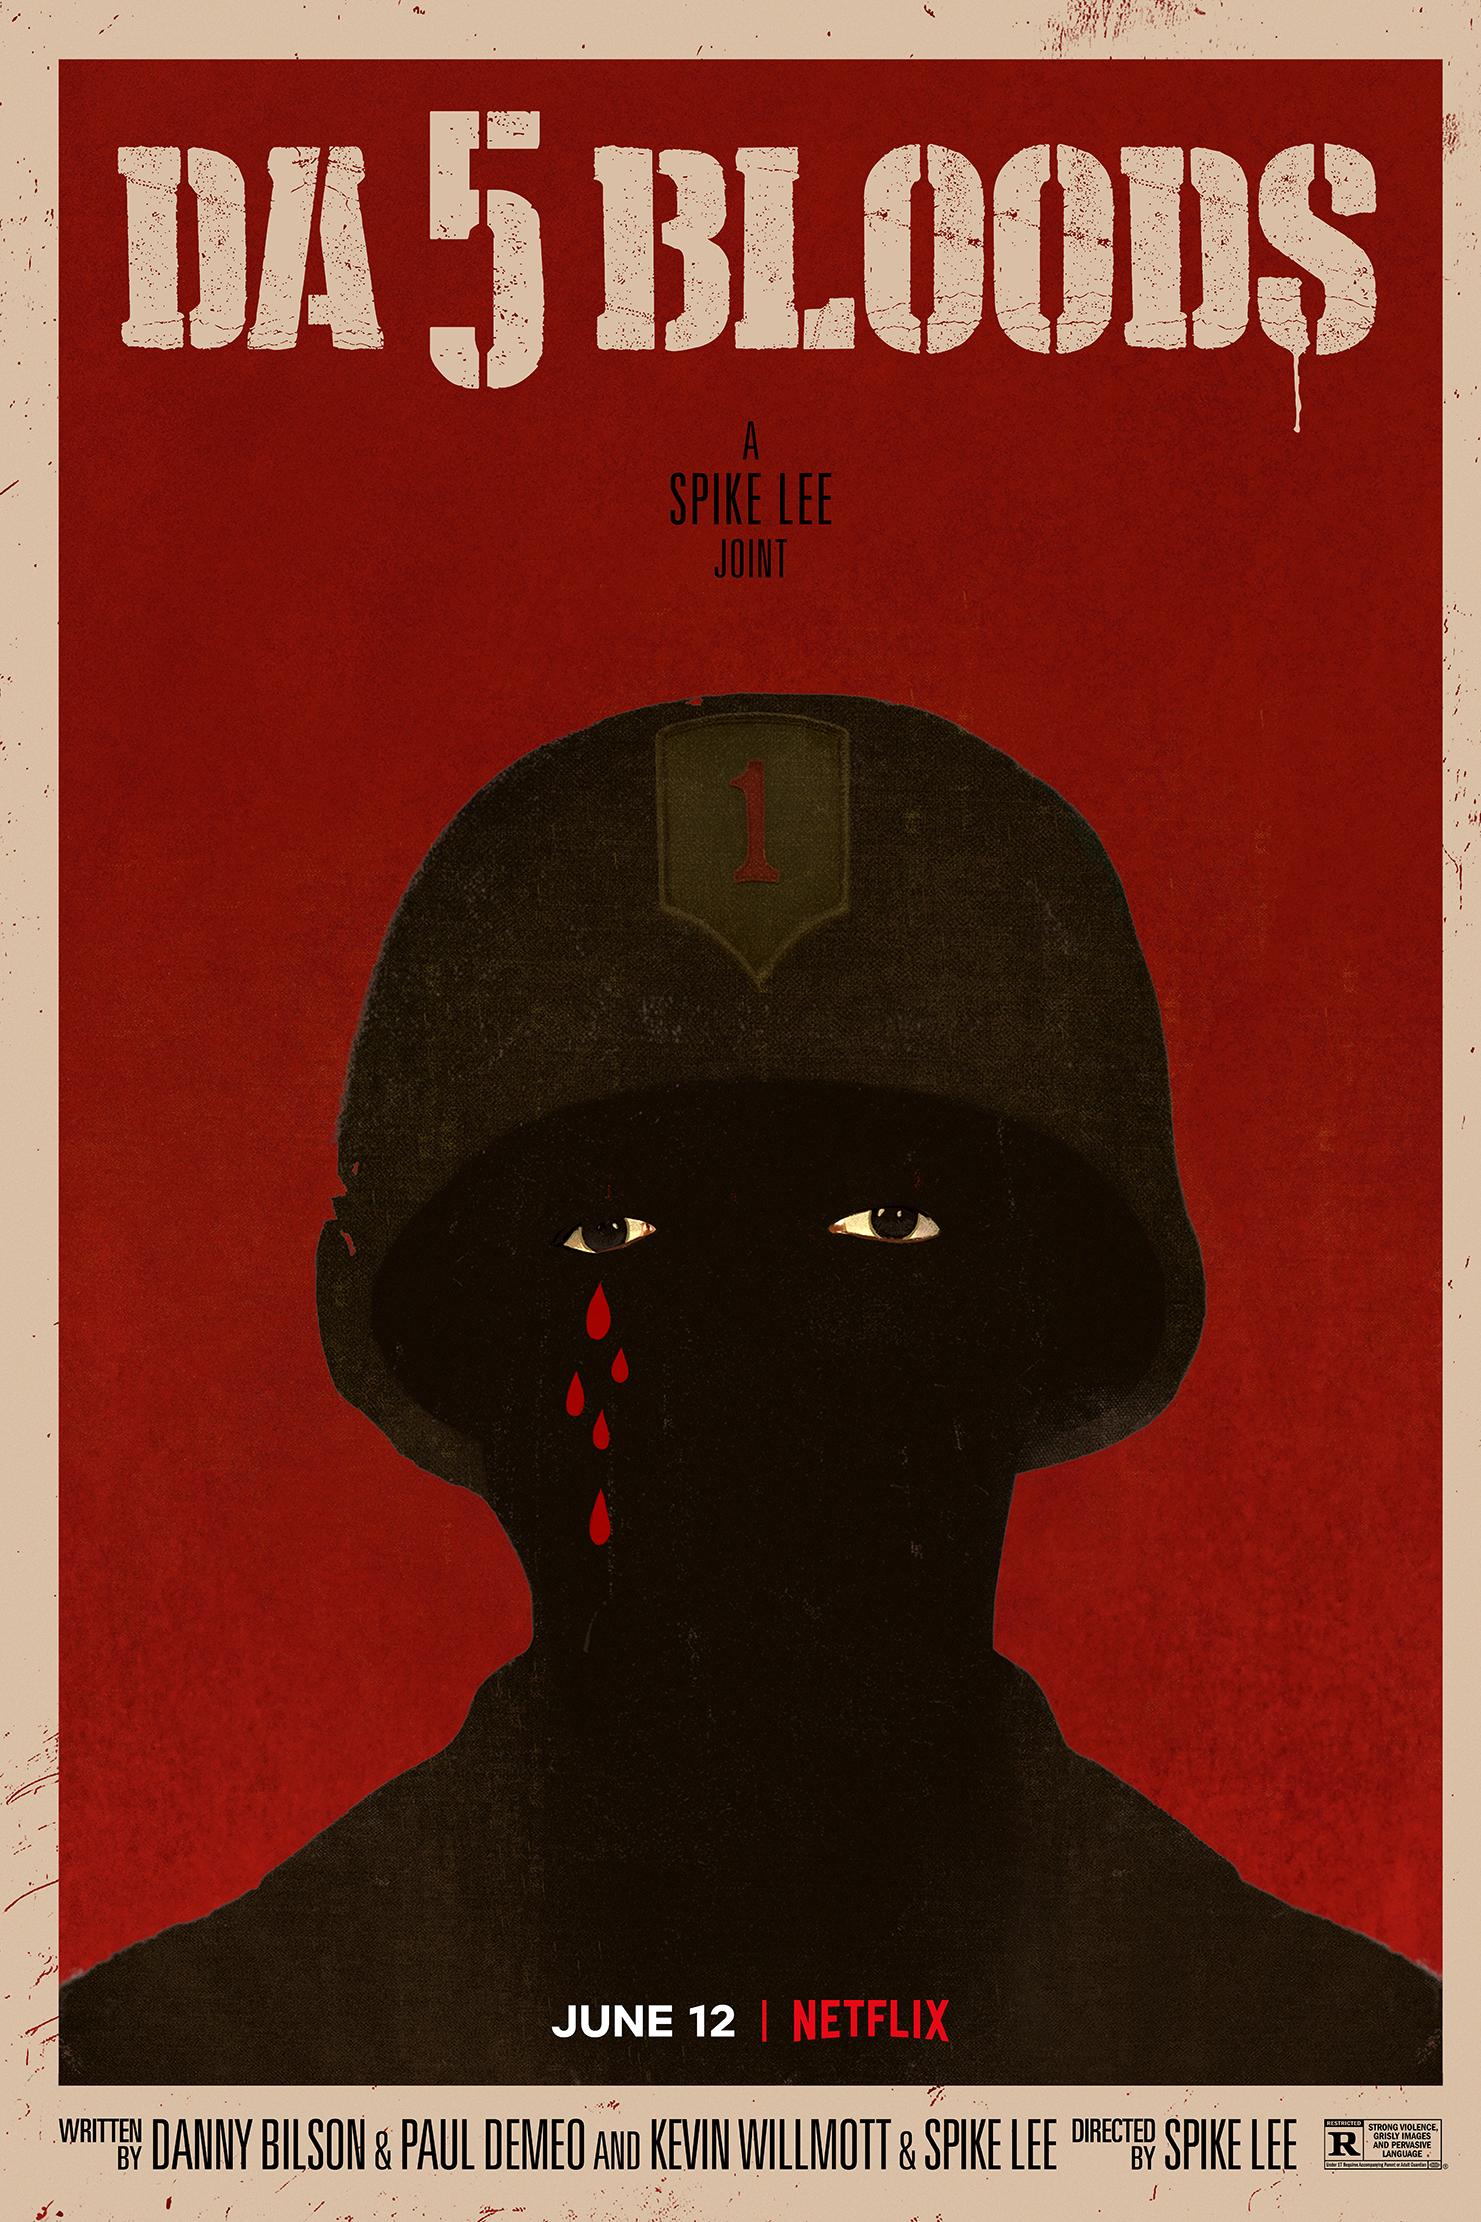 Interview: Spike Lee on Da 5 Bloods, his new Vietnam war film